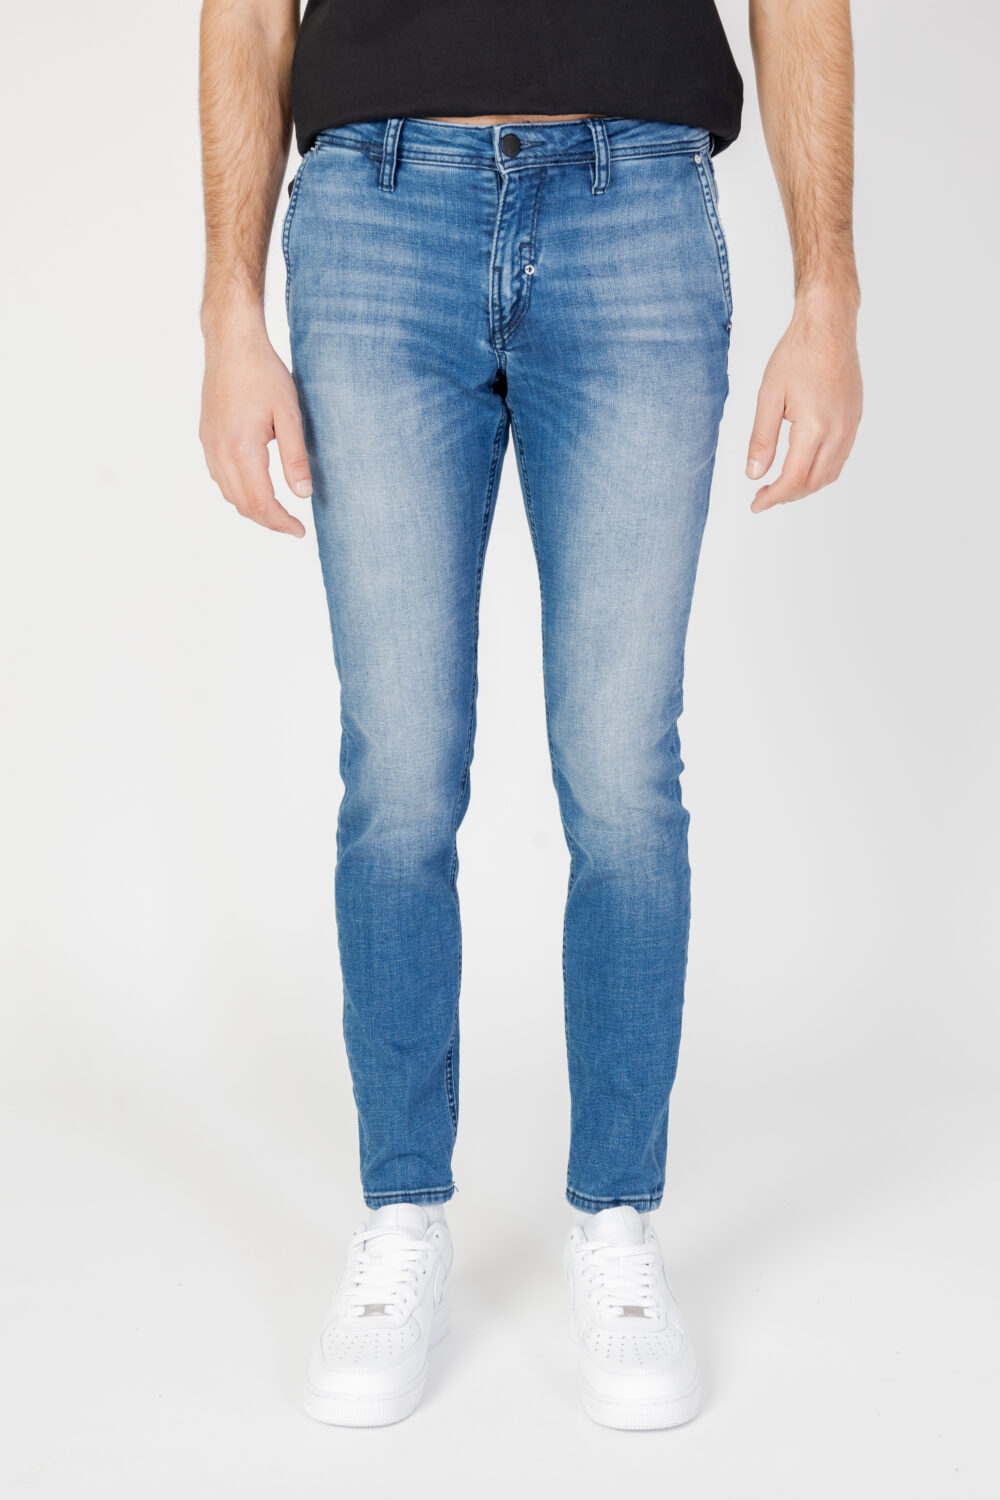 Jeans skinny Antony Morato MASON Denim - Foto 5